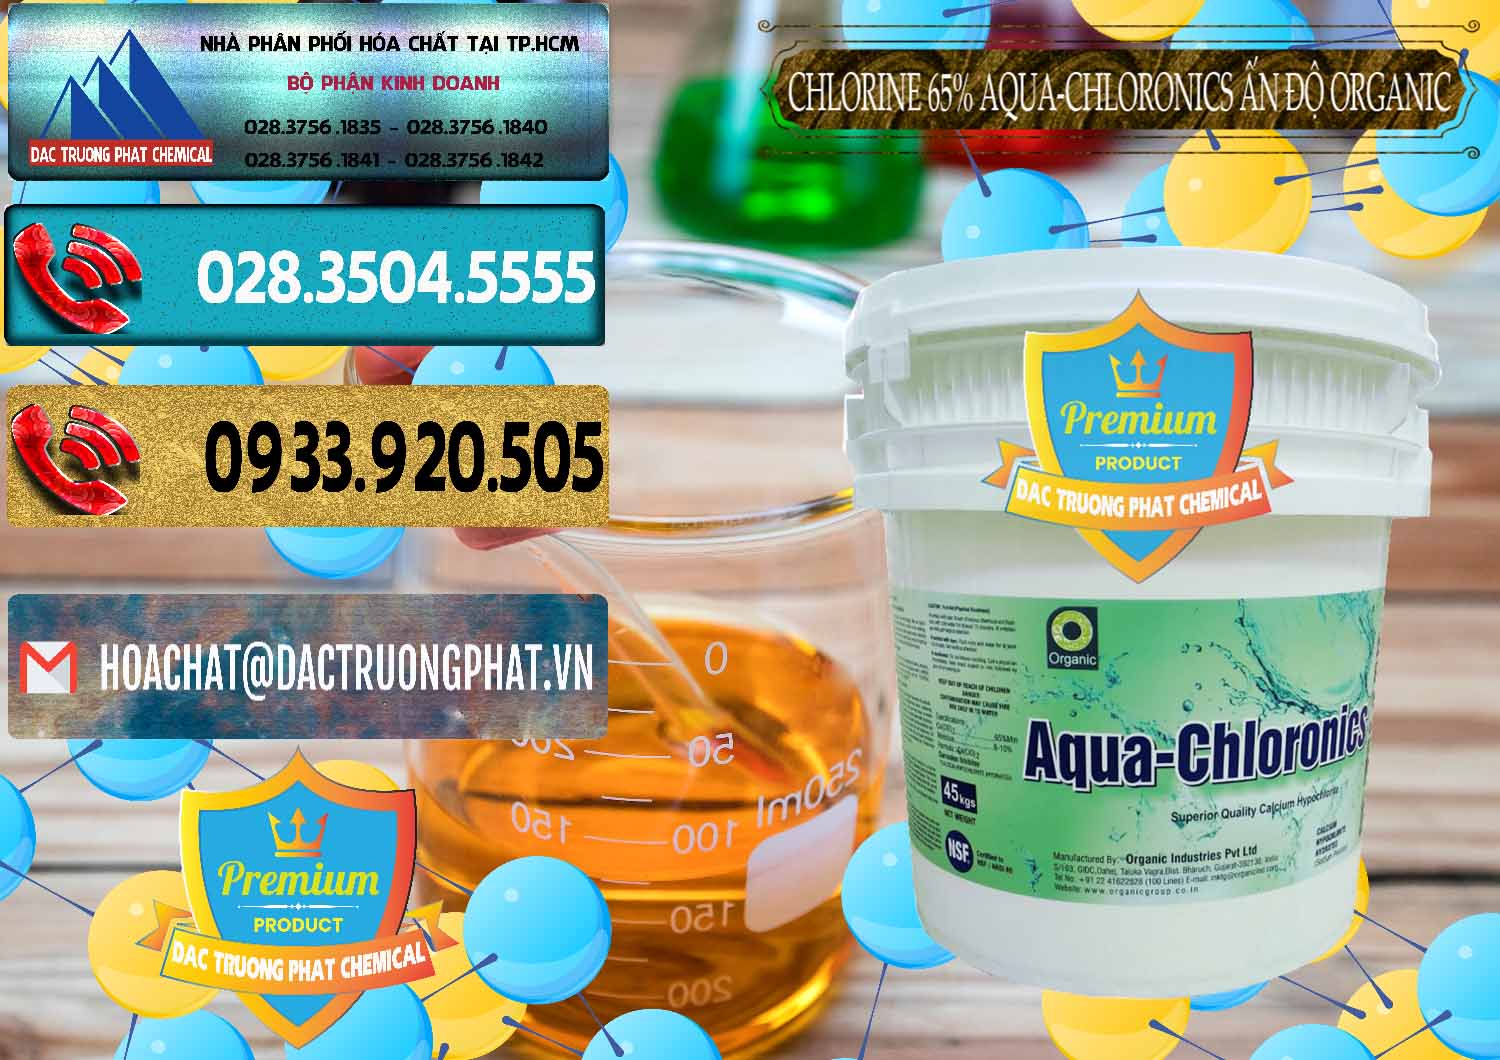 Bán & cung cấp Chlorine – Clorin 65% Aqua-Chloronics Ấn Độ Organic India - 0210 - Cty cung cấp _ kinh doanh hóa chất tại TP.HCM - hoachatdetnhuom.com